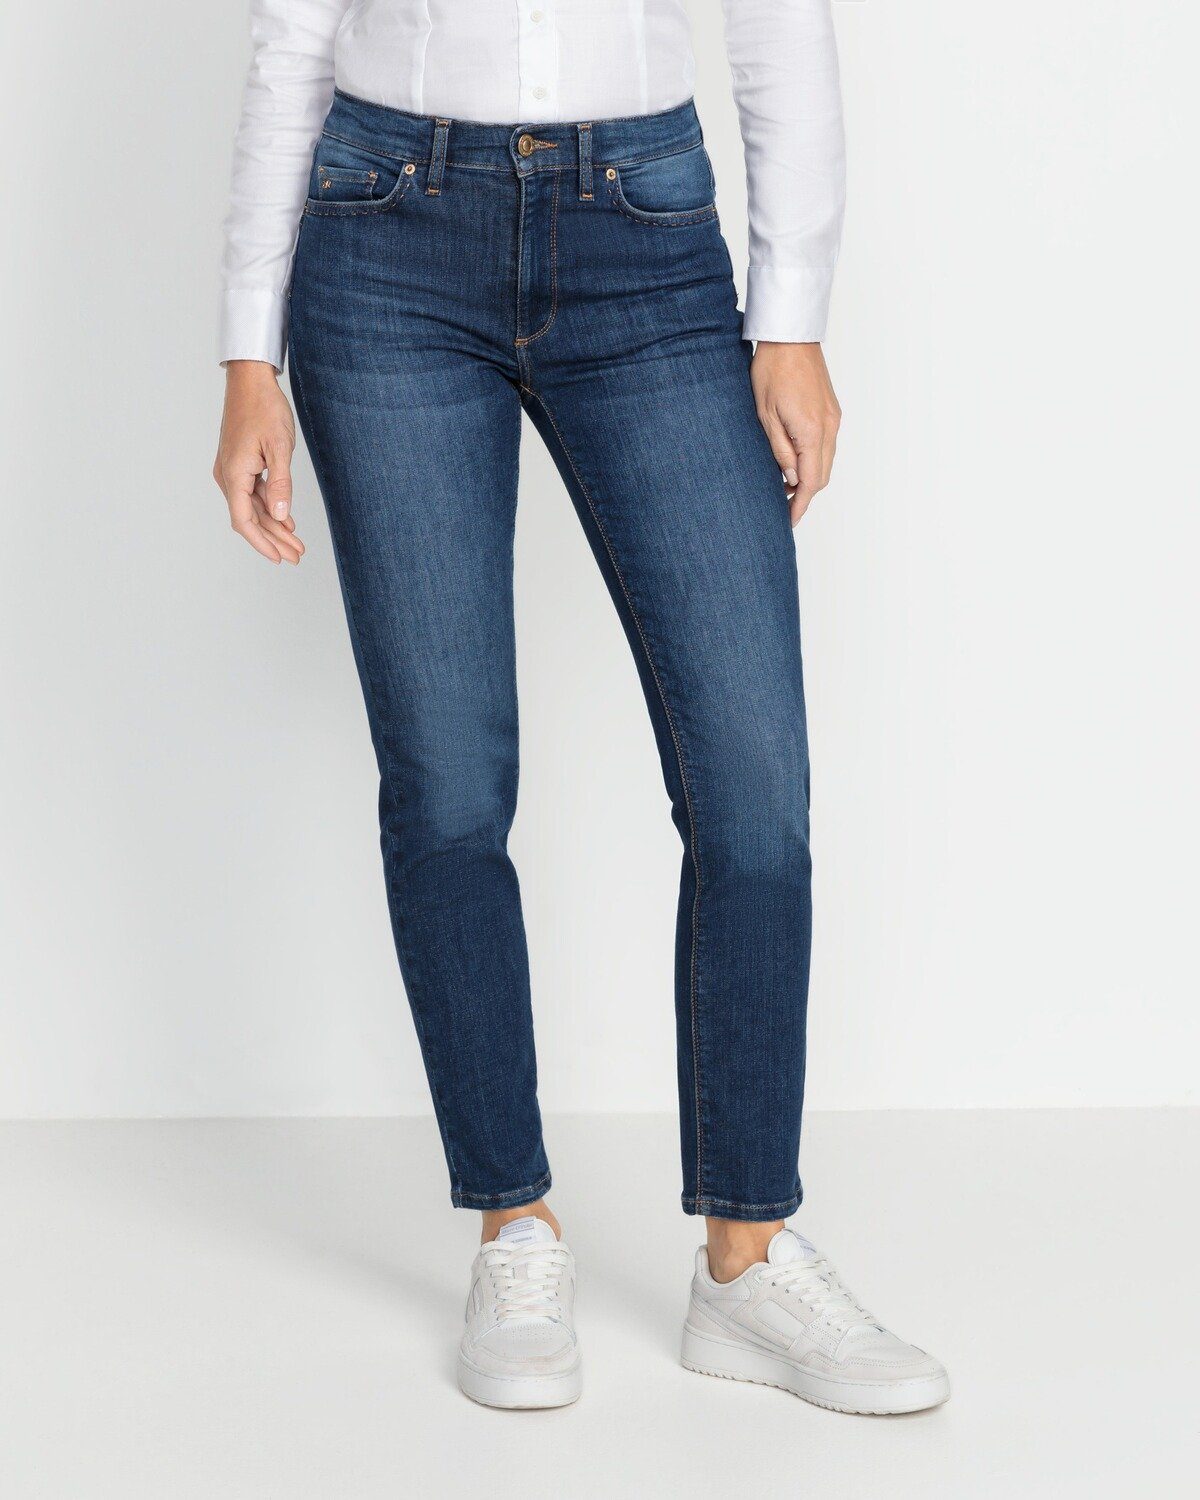 Raffaello Rossi 5-Pocket-Jeans Jeans Suzy